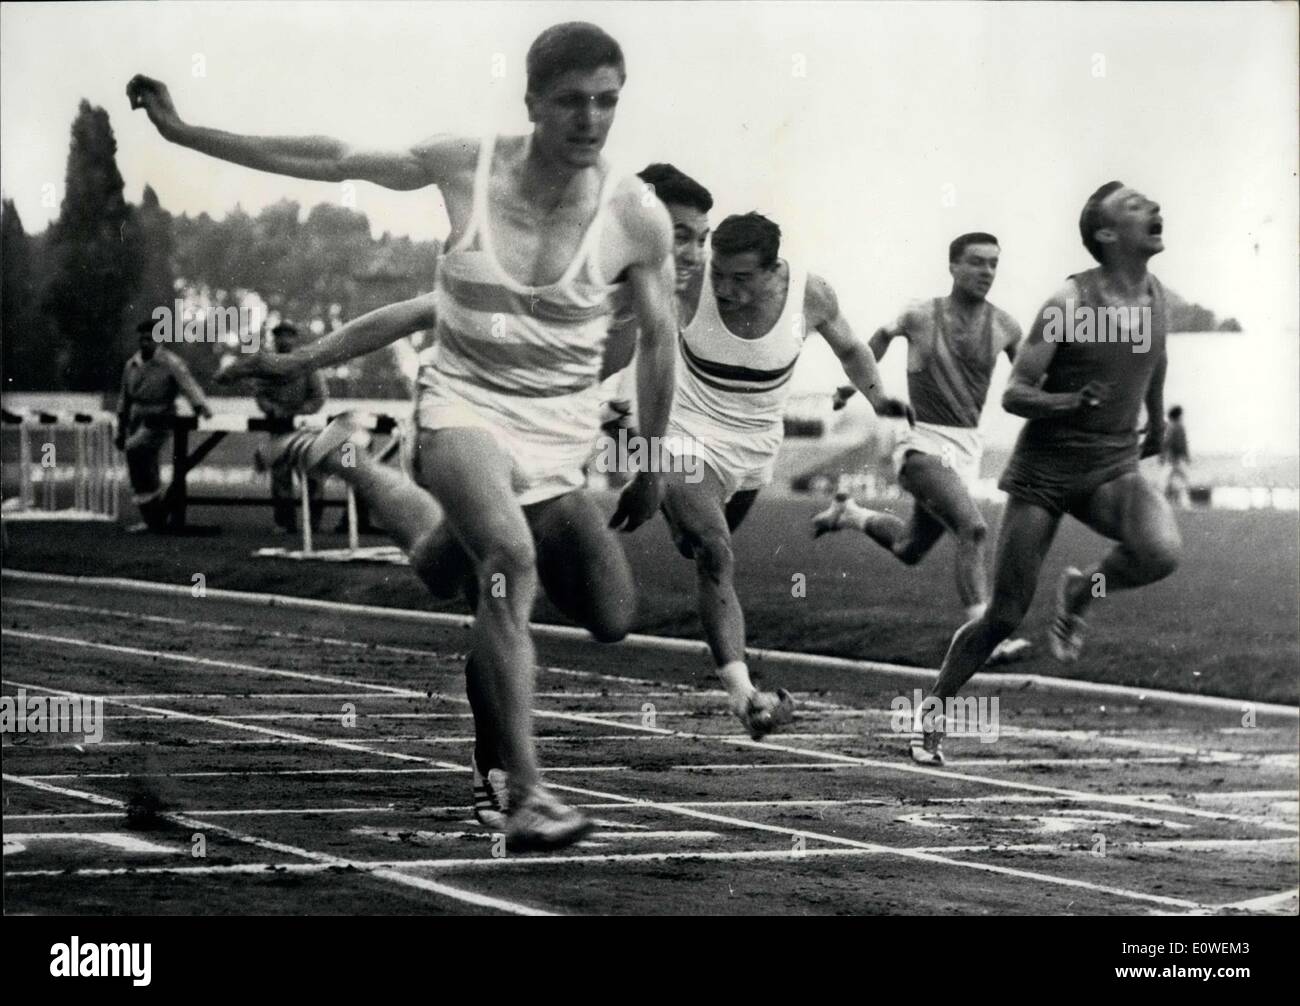 Juillet 29, 1962 - Après la première journée de la France d'athlétisme à Colombes, Jocelyn Delecour remporte le 100 mètres, l'établissement lui-même comme le meilleur athlète français. Jocelyn Delecour atteint la ligne d'arrivée de la course de 100 mètres en face de Piquemal. (Loeb est vêtu d'un uniforme rayé et a les mains en l'air. Banque D'Images